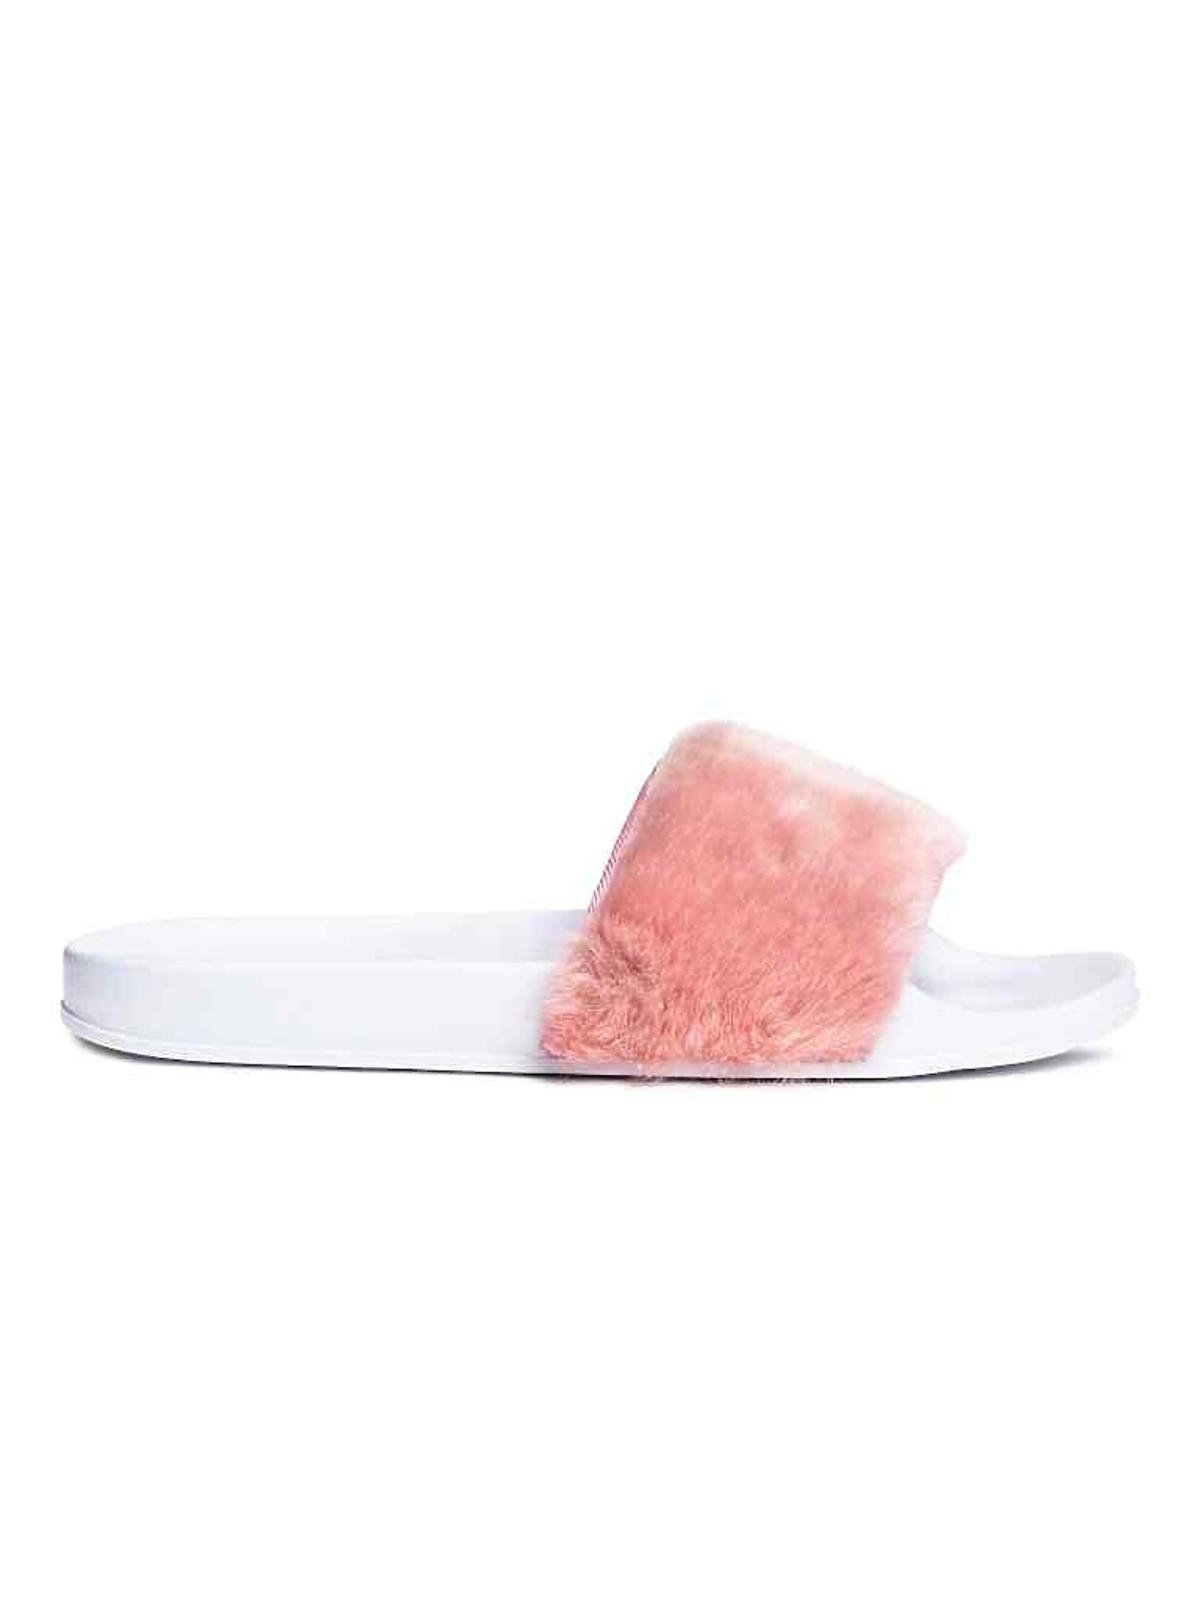 Klapki z białą podeszwą i różowym futerkiem, H&M, 70 zł